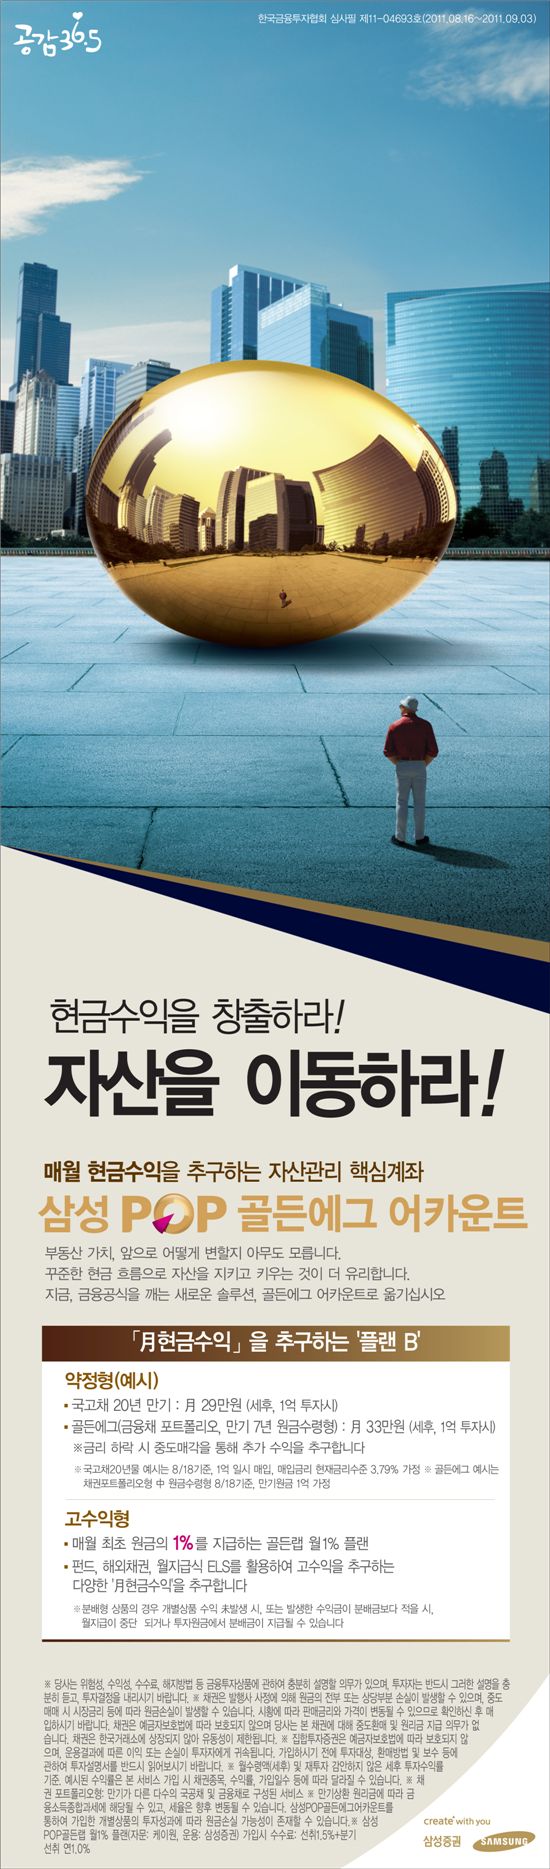 삼성증권 광고, '삼성POP 골든에그 어카운트'